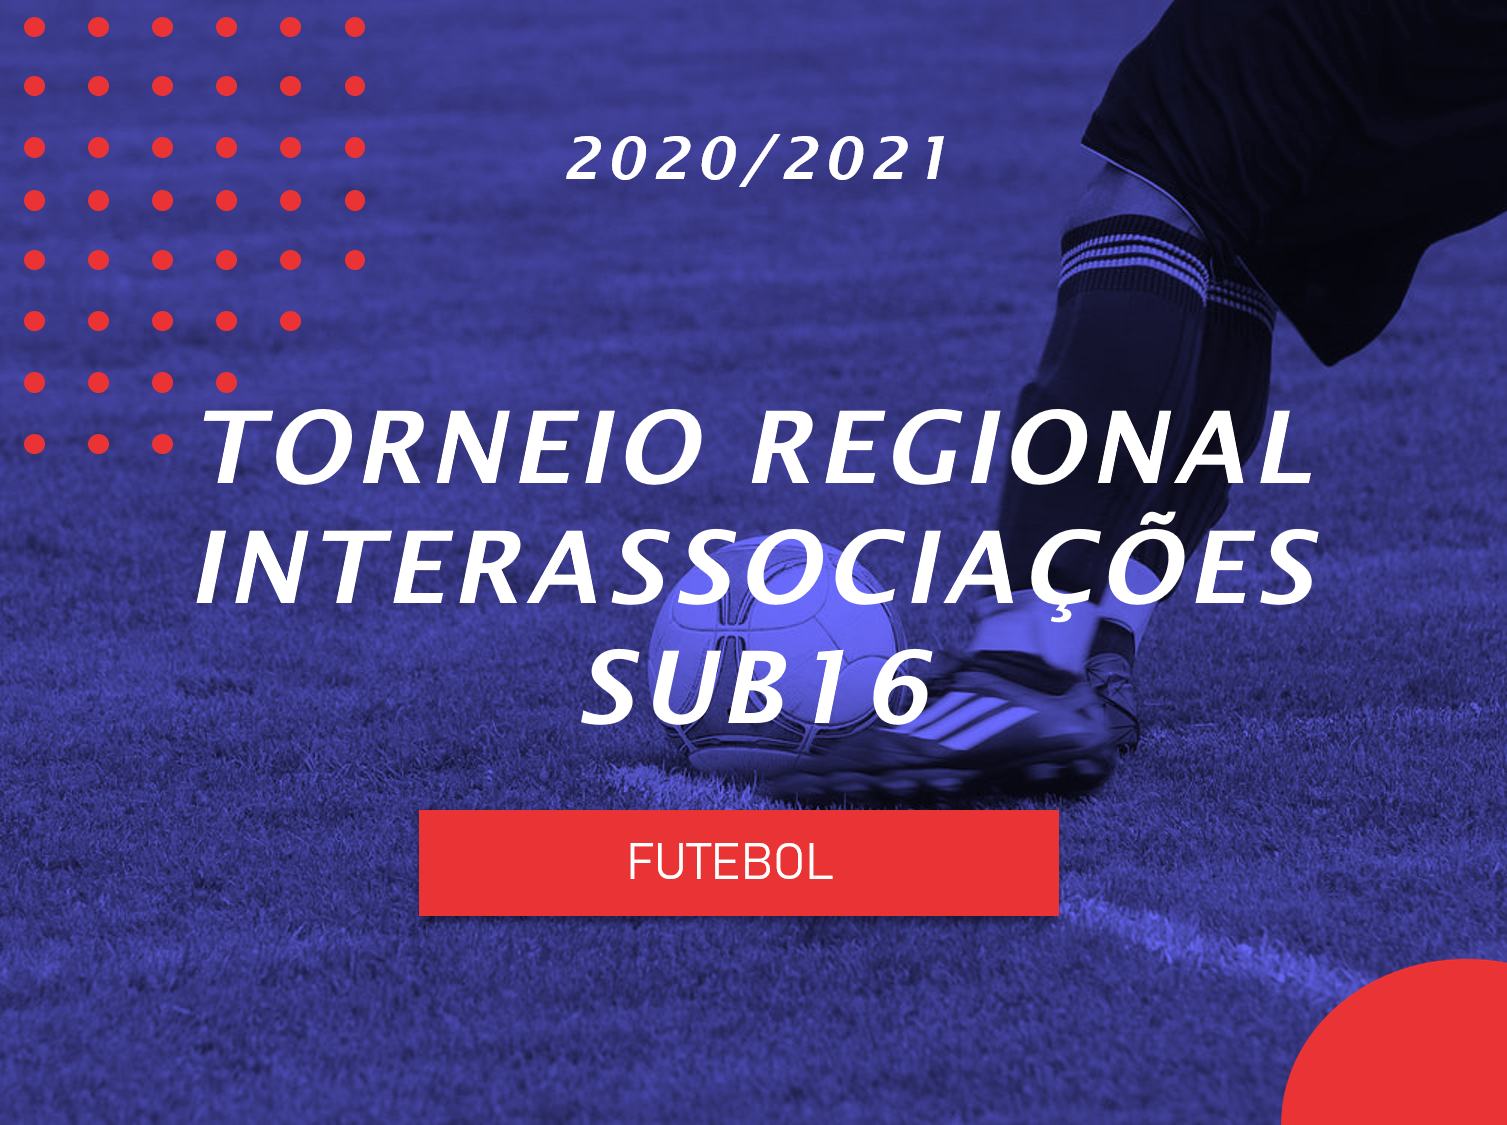 Torneio Regional Interassociações - Sub16 - Futebol